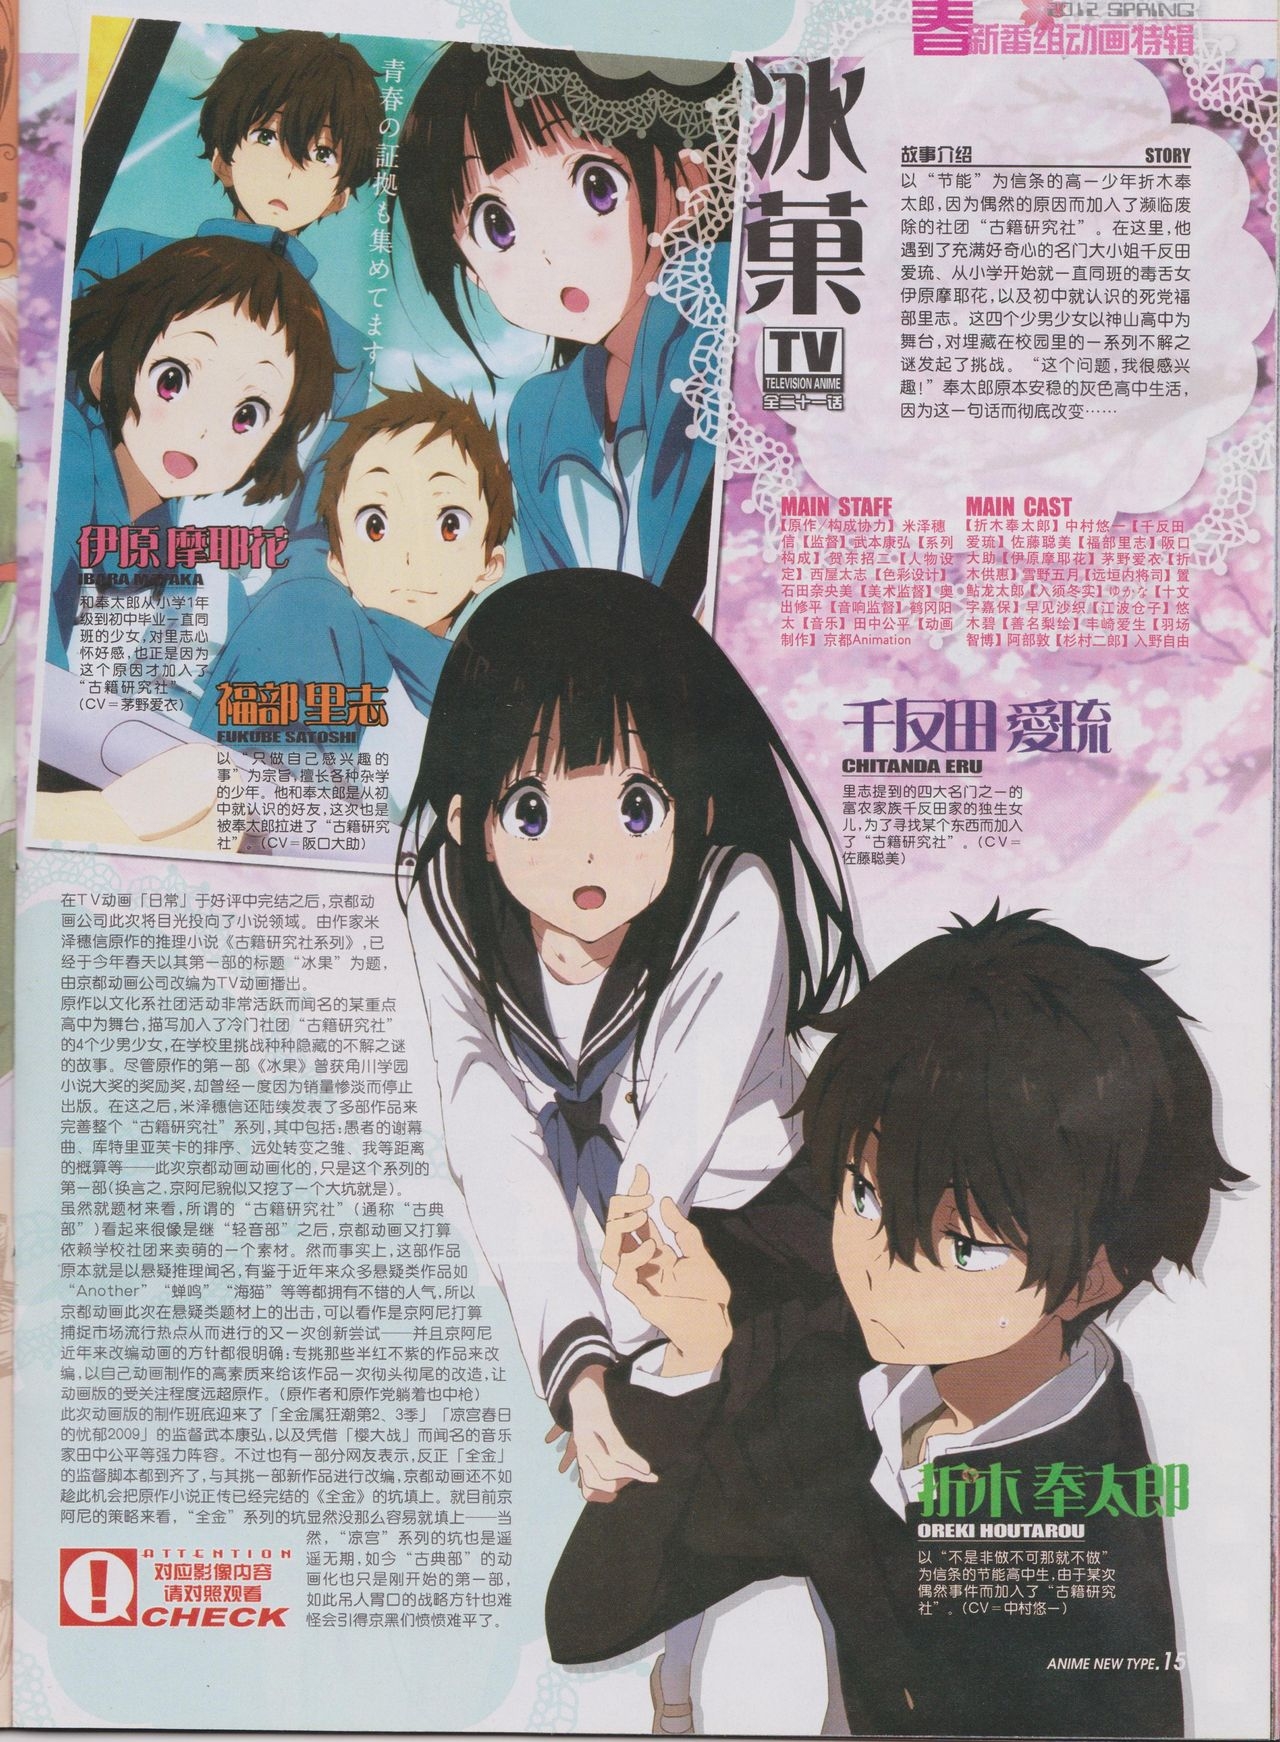 Anime New Type Vol.111 16